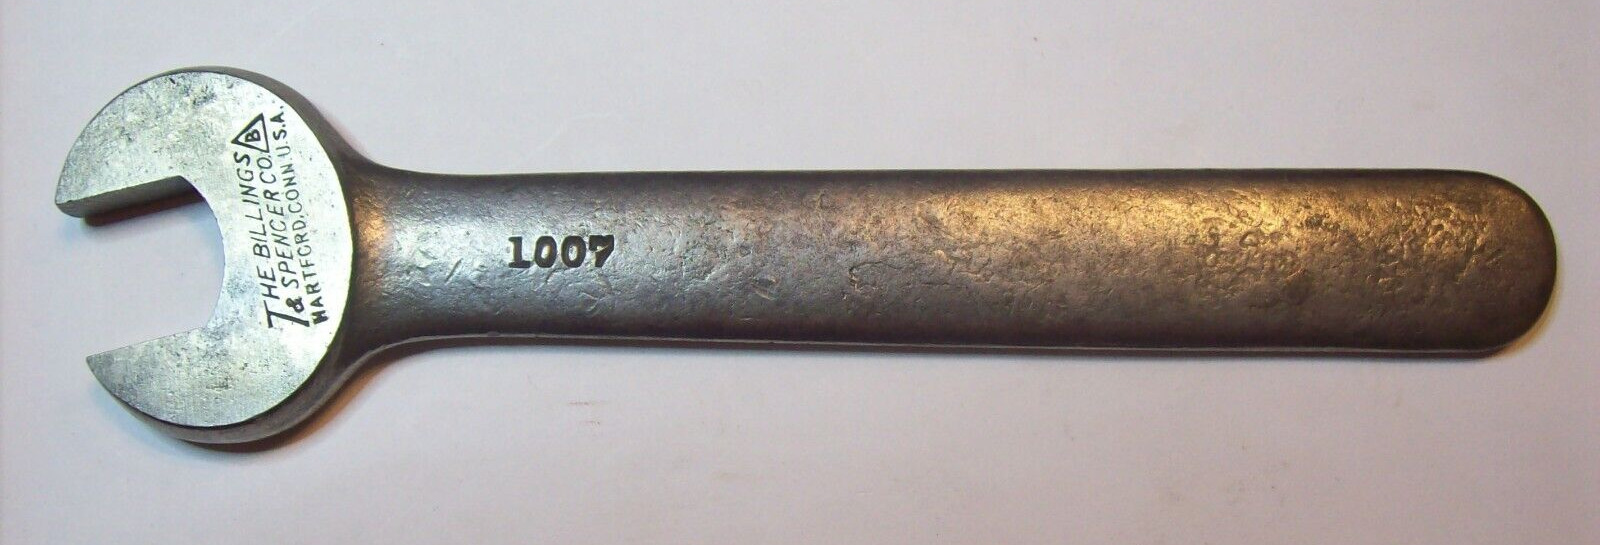 vtg.  Billings & Spencer #1007  11/16\'\' (3/8 USS) open end wrench c-1915-1926